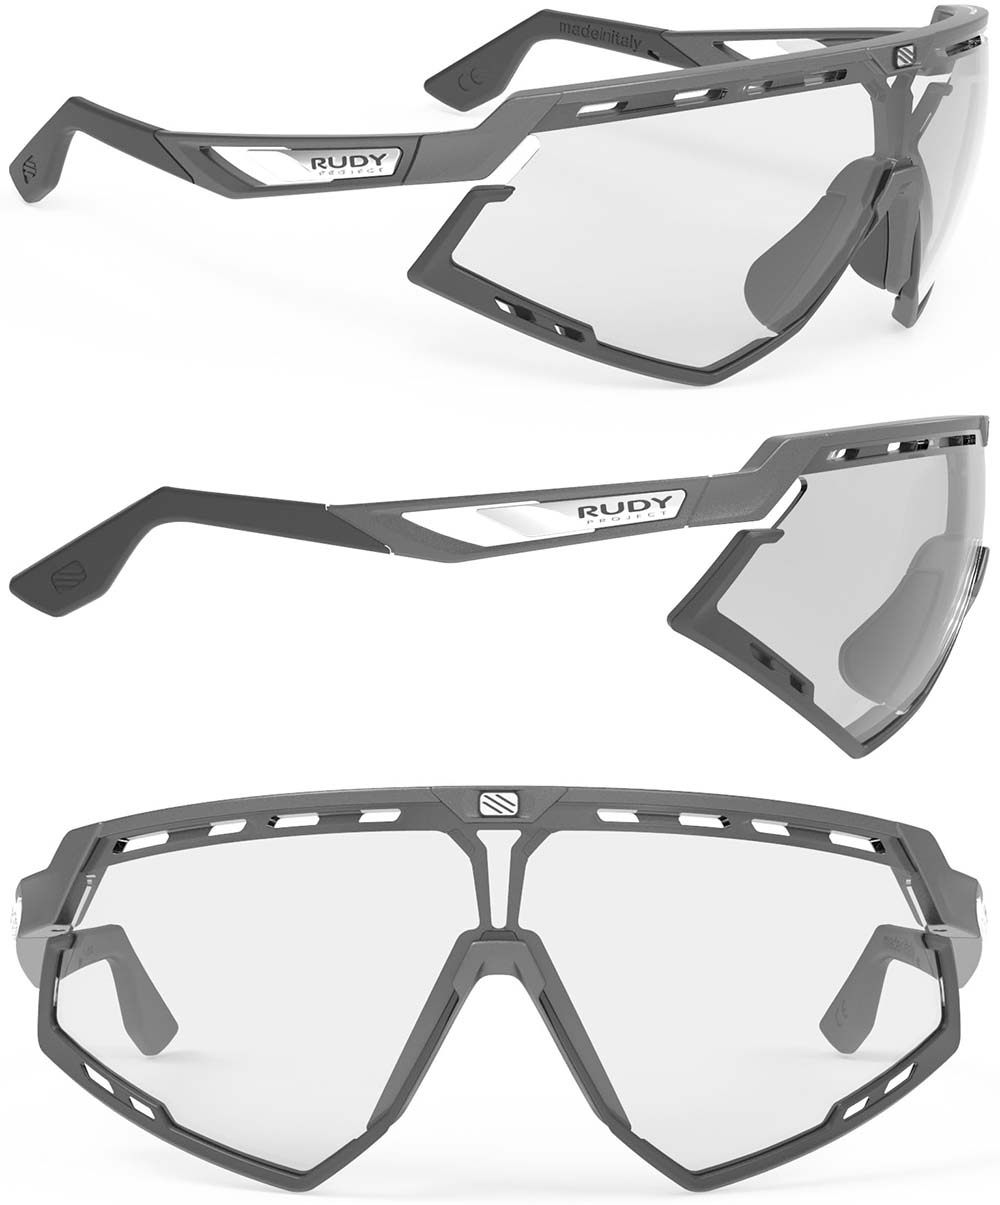 En TodoMountainBike: Rudy Project presenta dos modelos de gafas para ciclistas con montura de grafeno